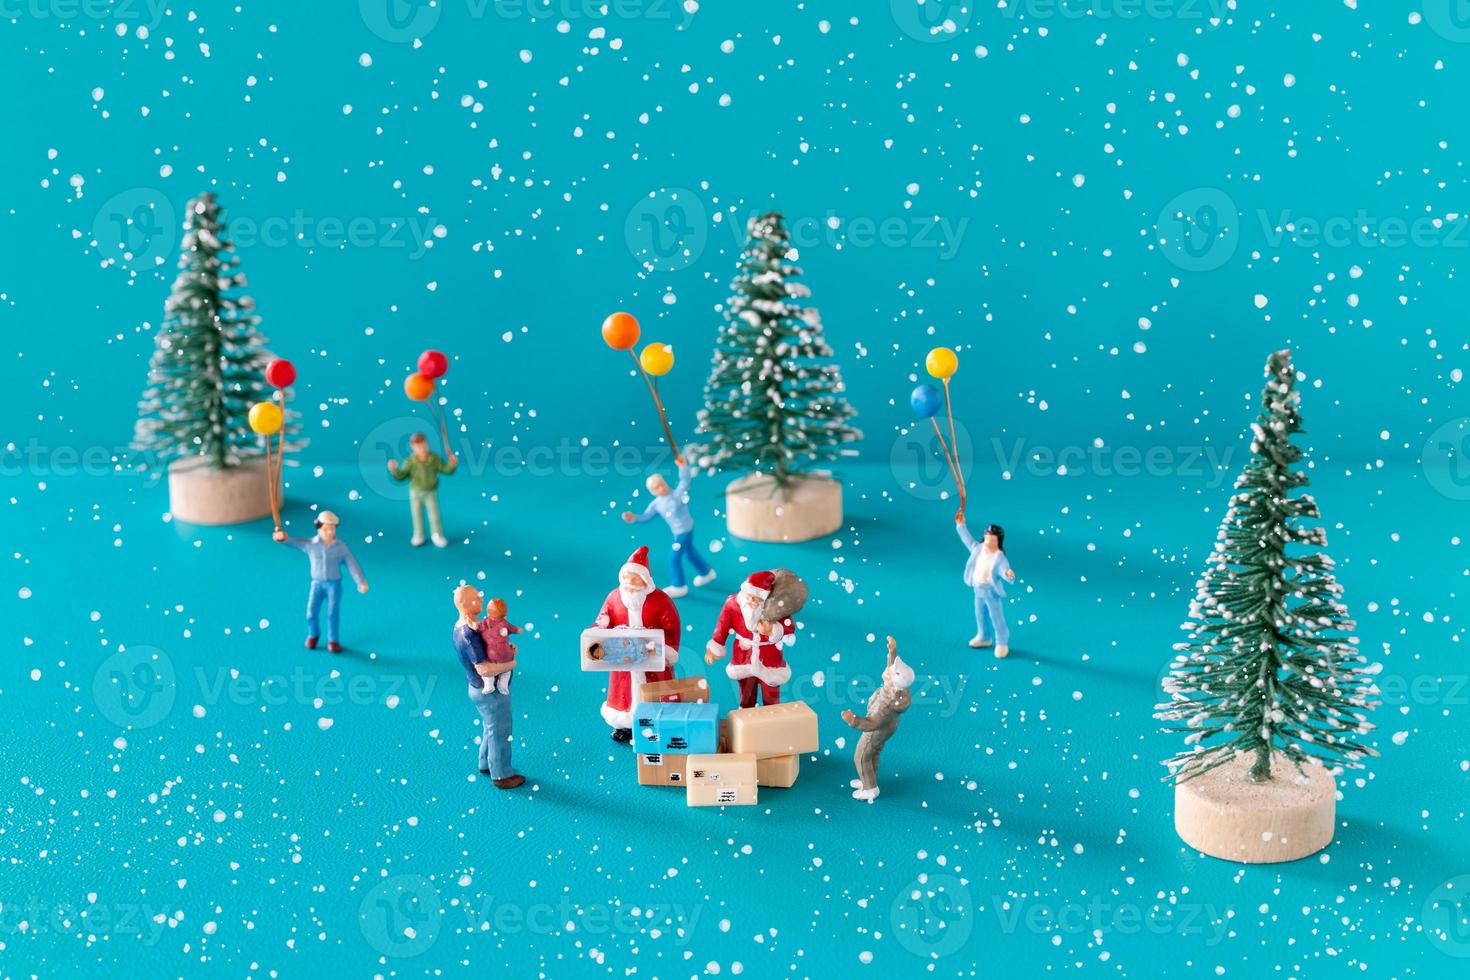 miniatuur mensen, kerstman levering geschenkdoos voor kinderen foto